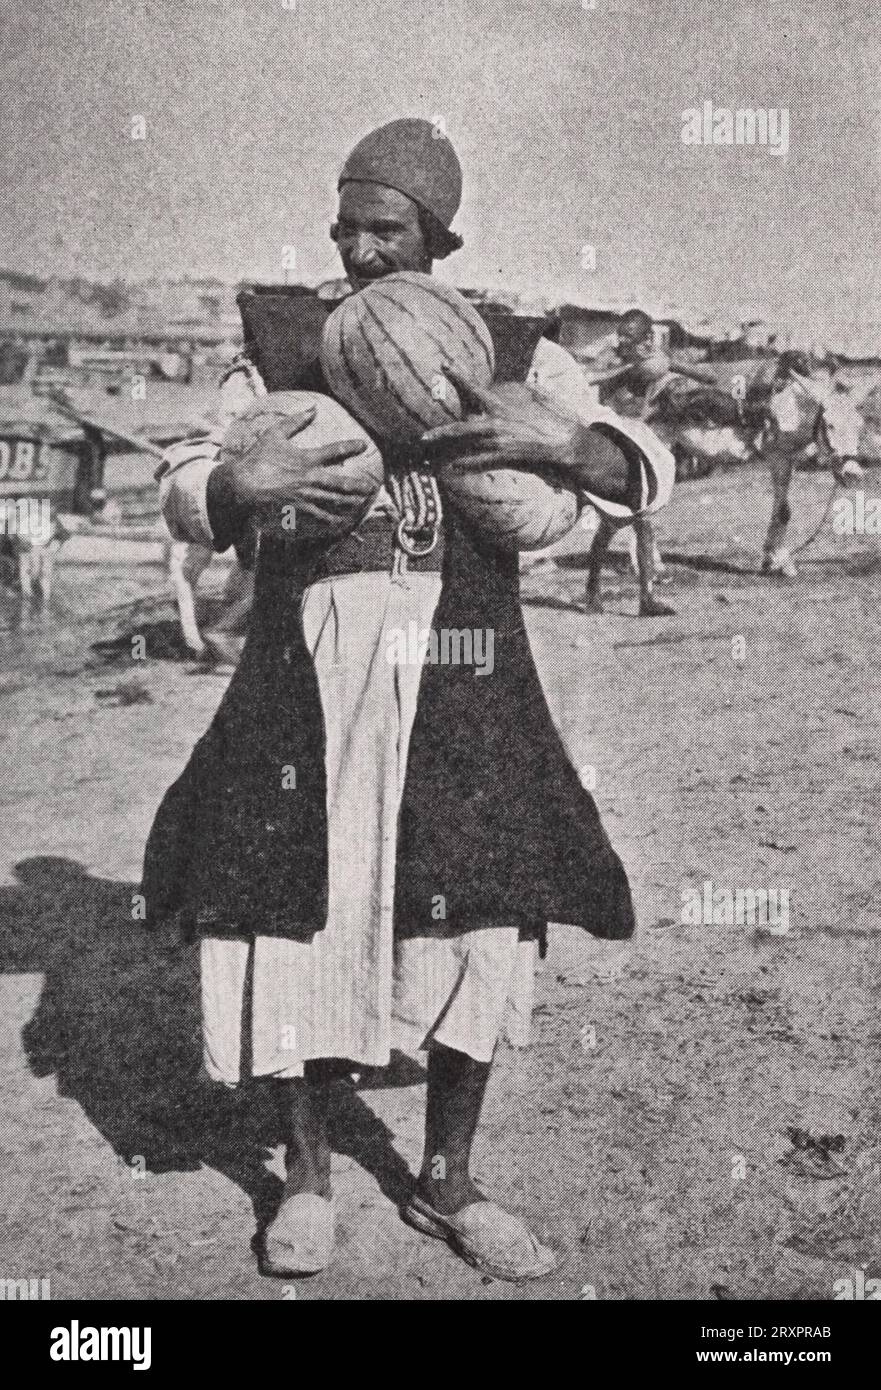 Vente de pastèques en Irak, vers 1937 Banque D'Images